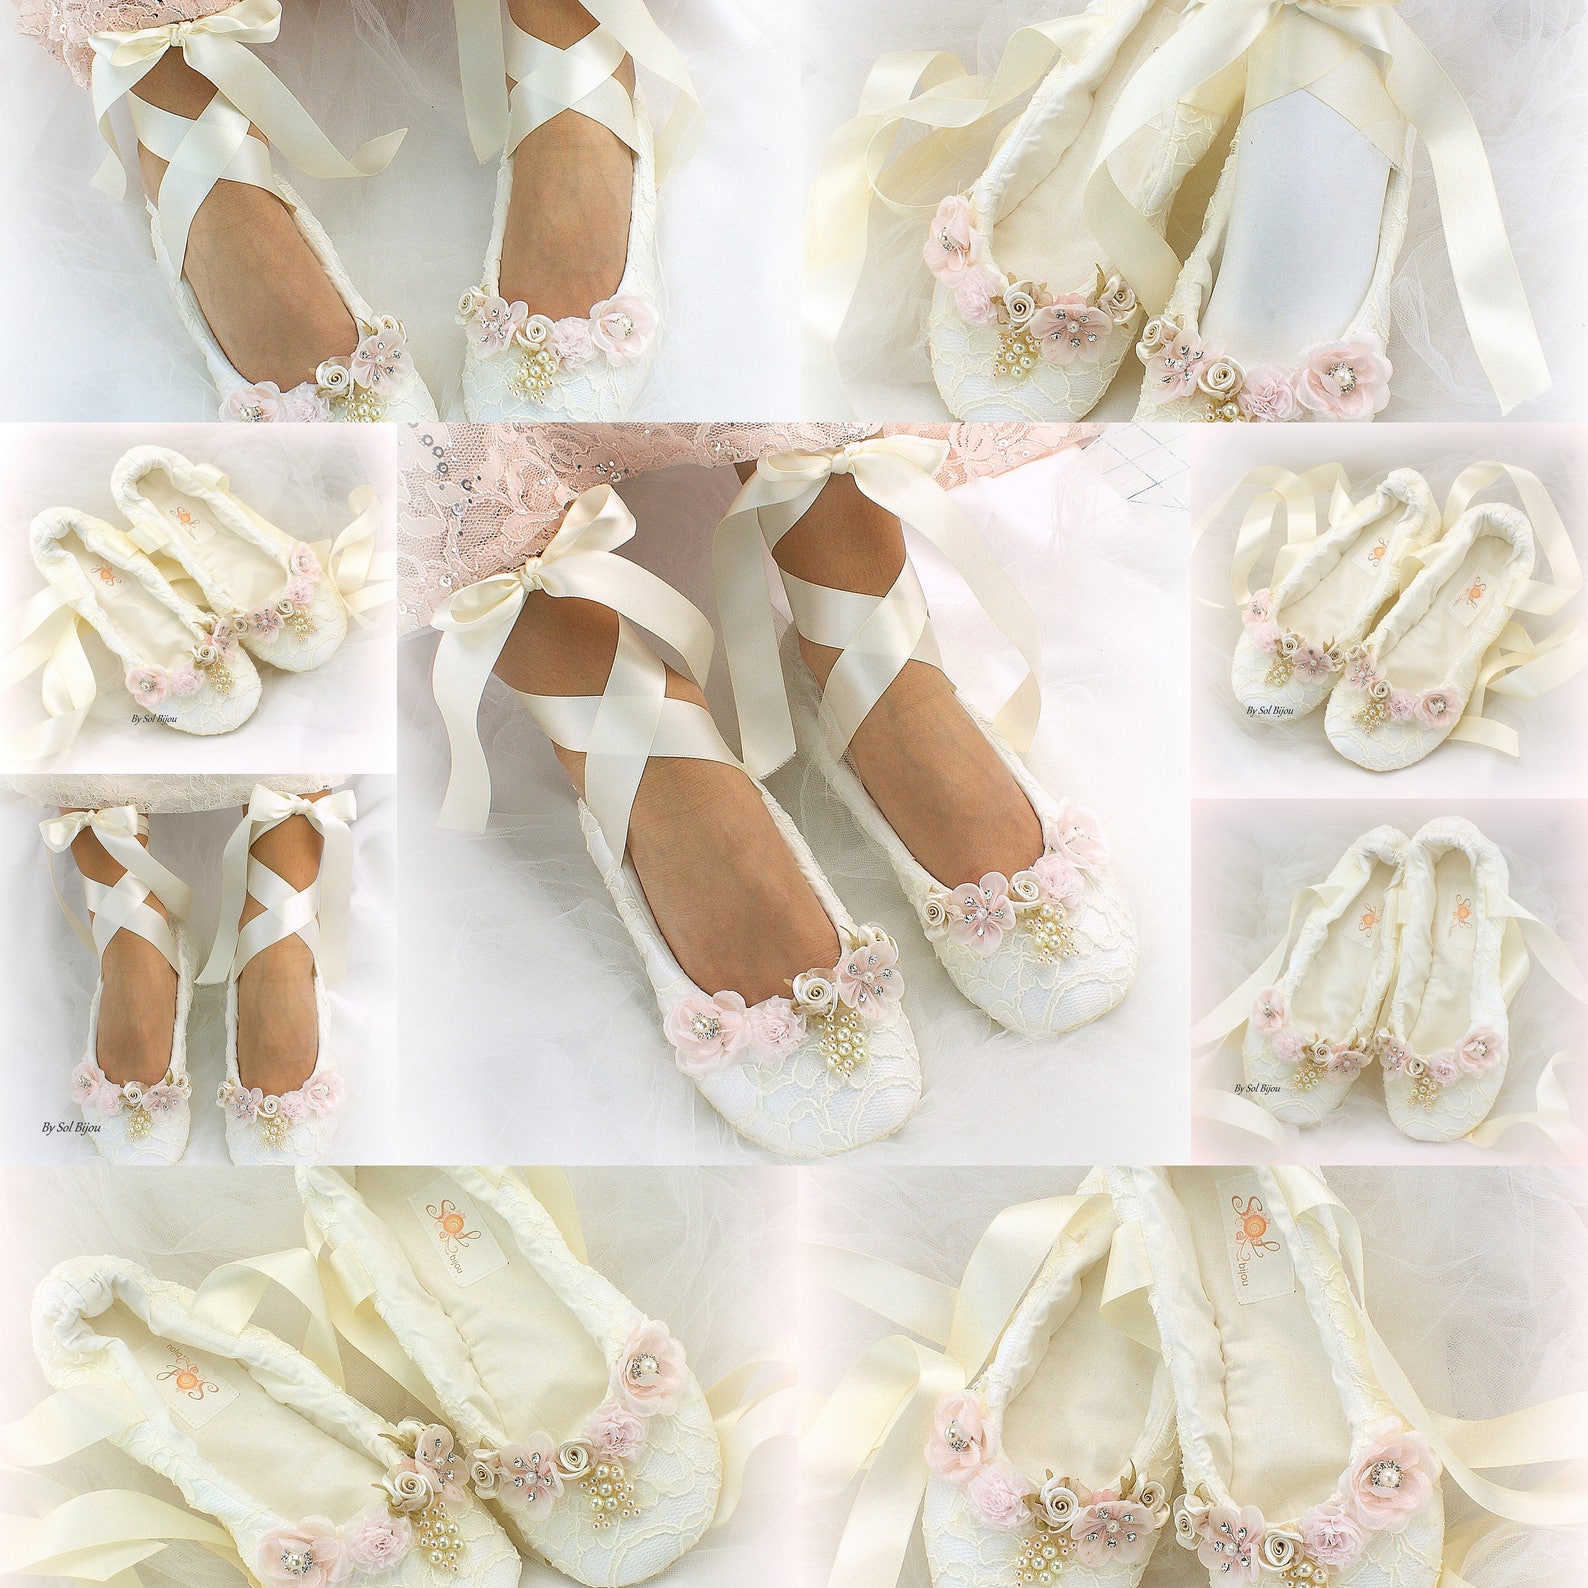 white lace ballet pumps